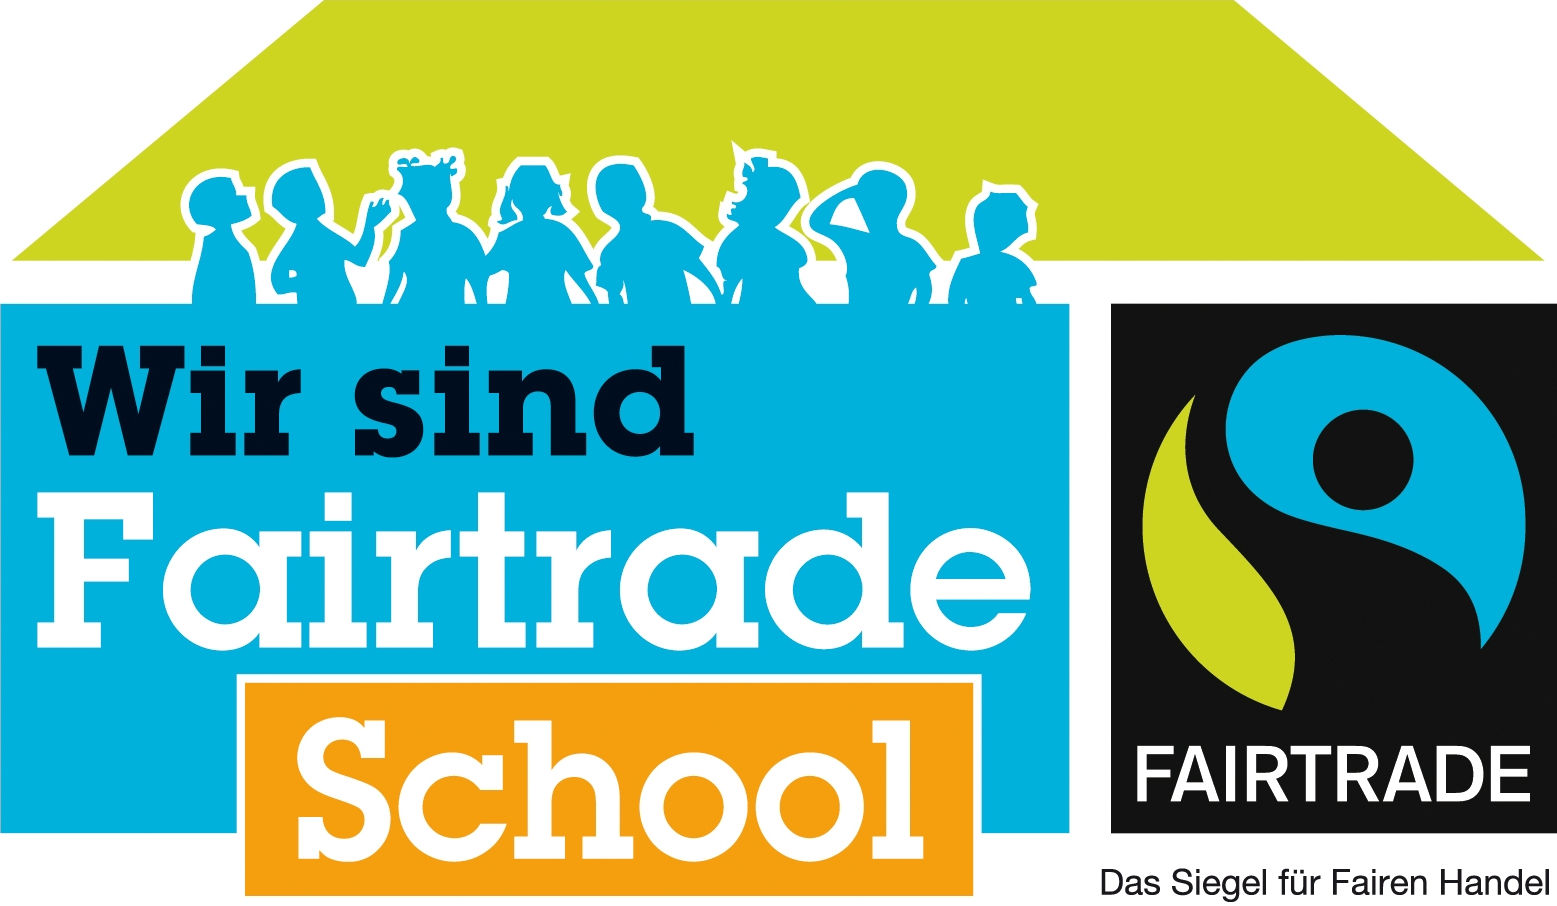 Wir sind Fairtrade School